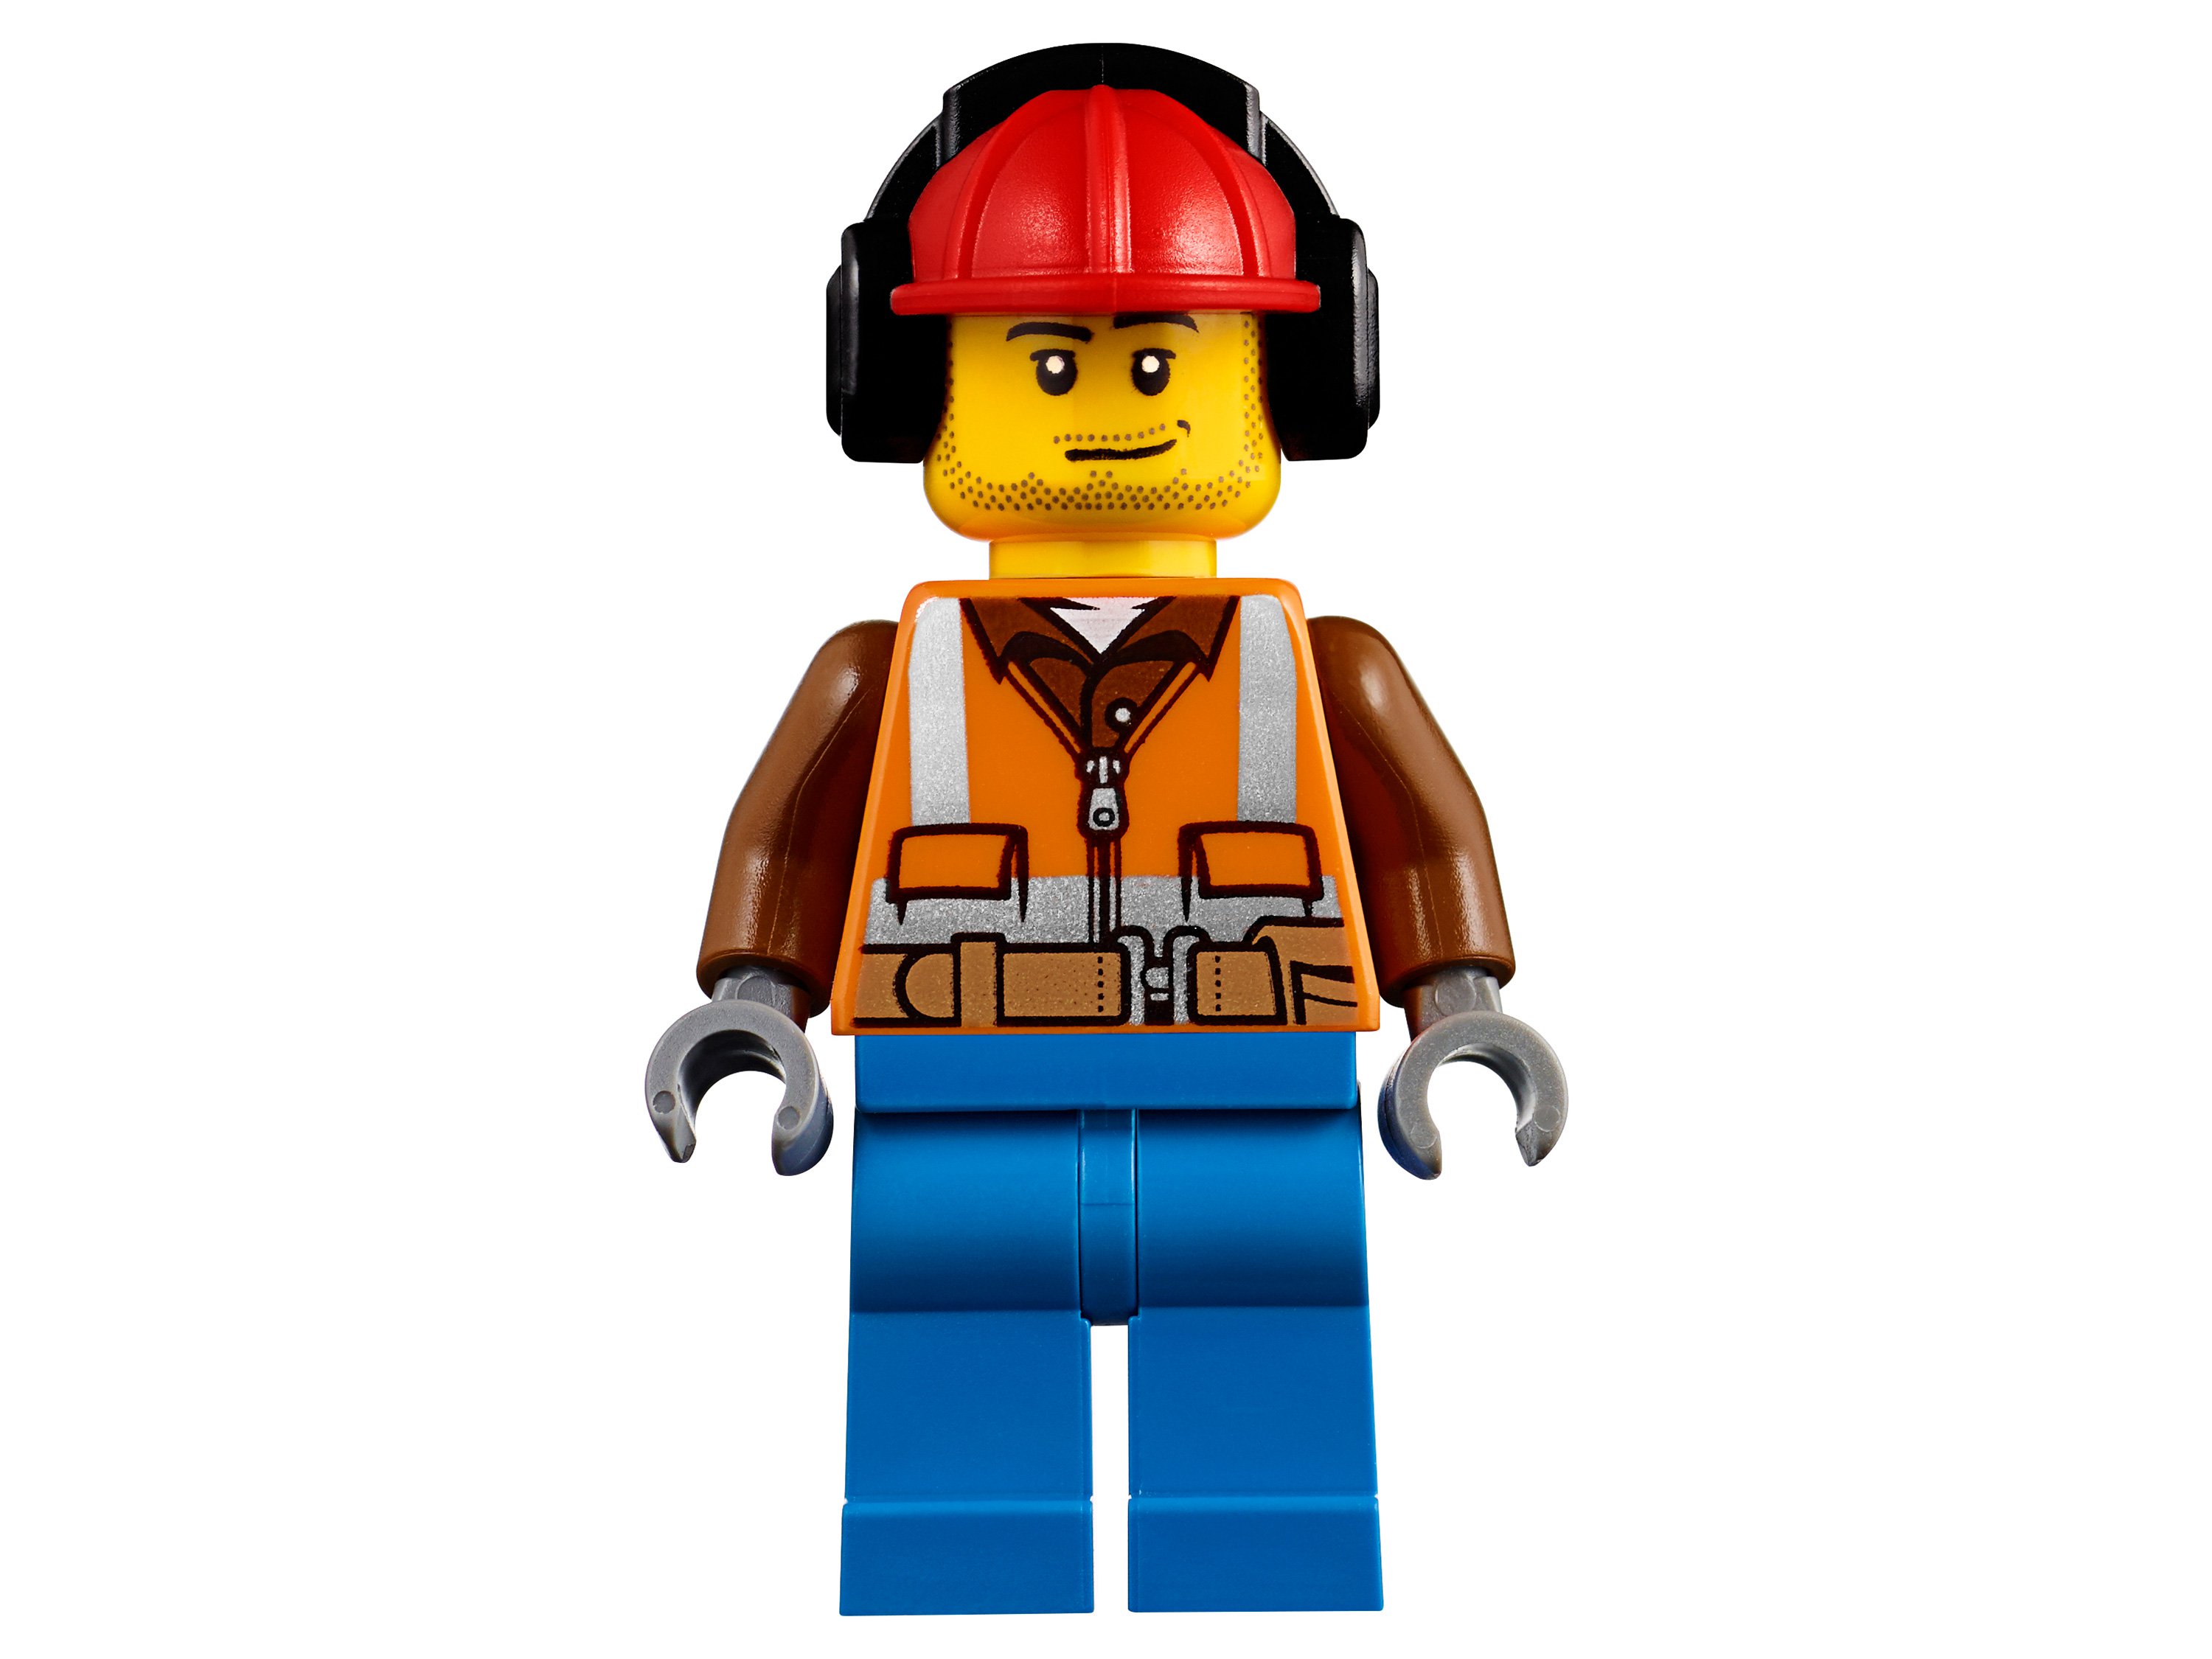 Конструктор LEGO 60181 City Great Vehicles Лесной трактор